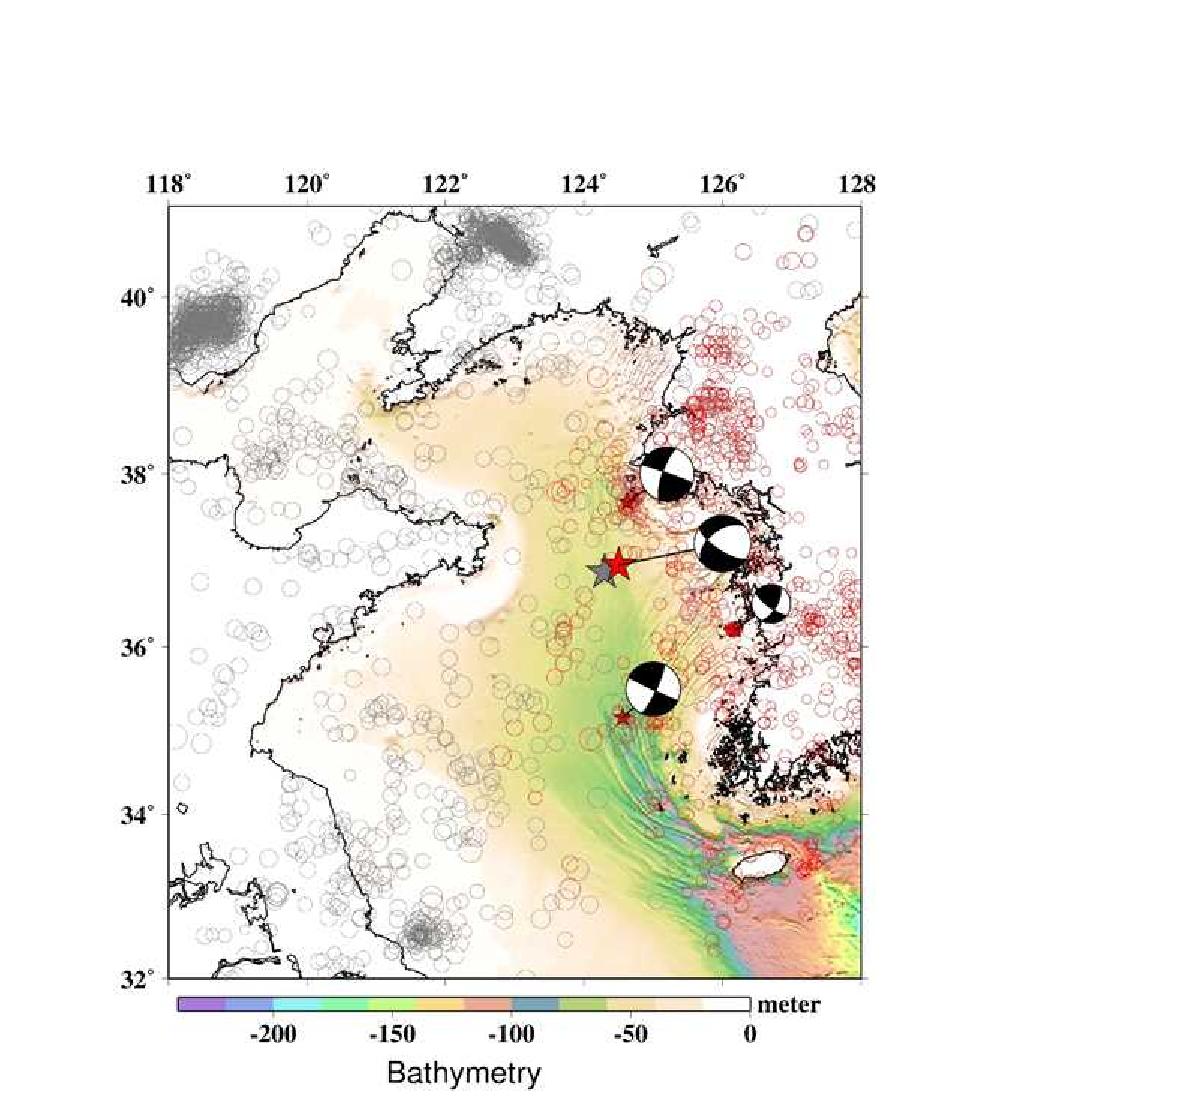 2014년 4월 1일 서해 격렬비도 해역에서 발생한 지진(규모 5.1)에 대한 한국 기상청 (빨강색 별)과 중국 지진국 지진 발생위치 정보(회색 별).